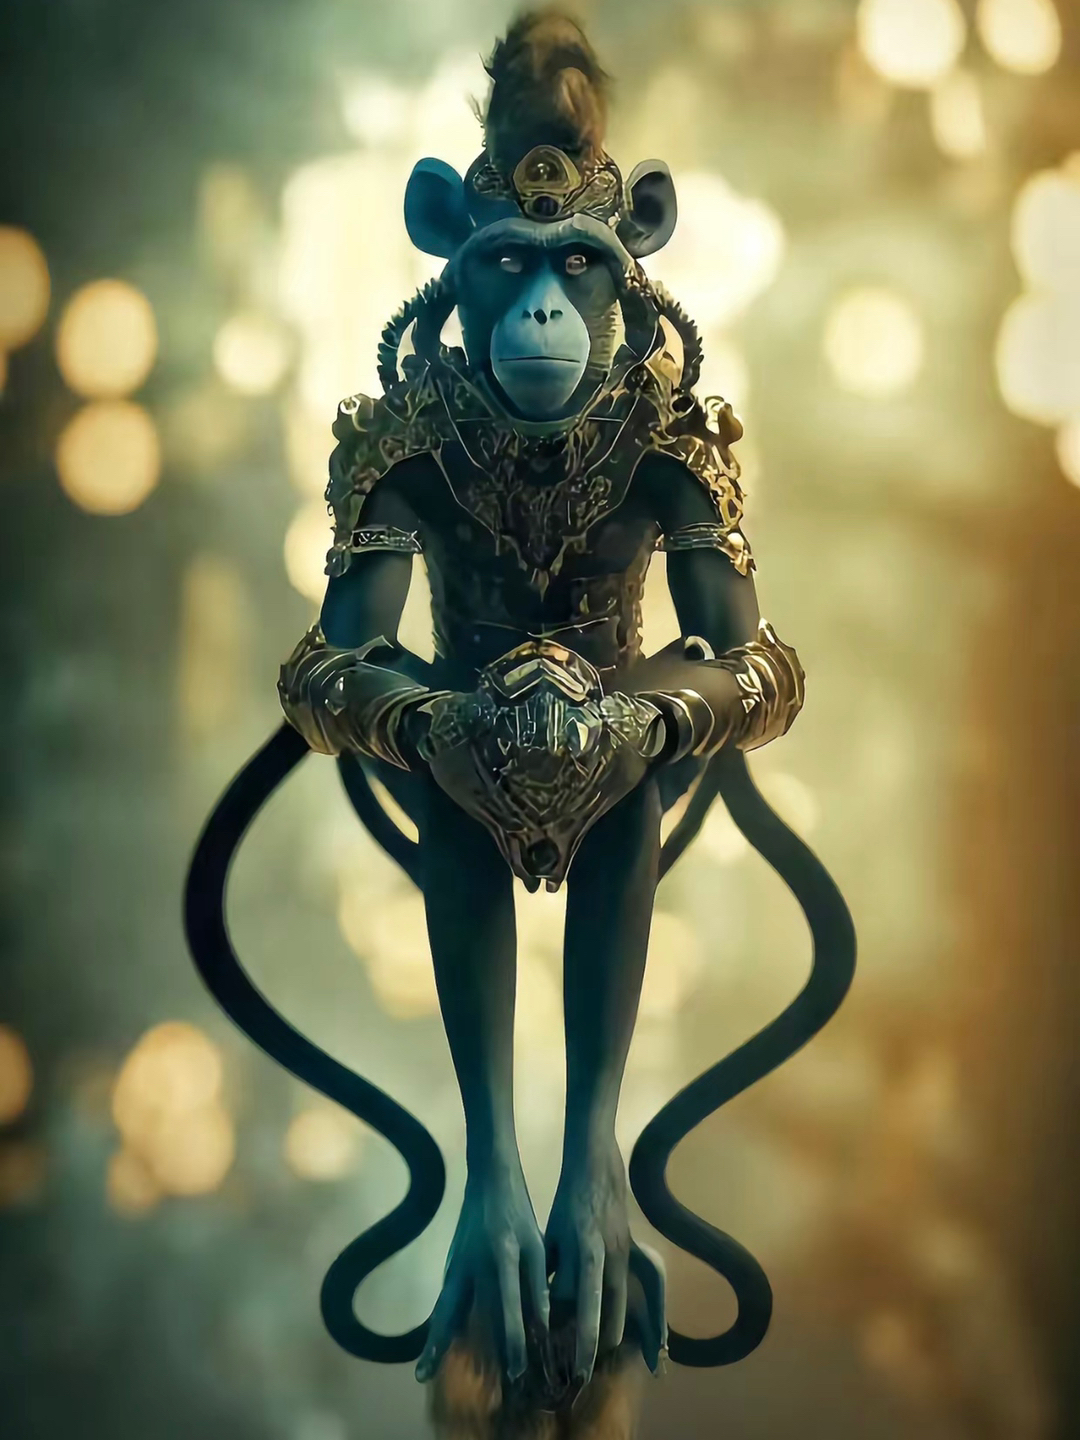 Tổng hợp hình ảnh con khỉ đẹp nhất | Tiny monkey, Monkey, Primates